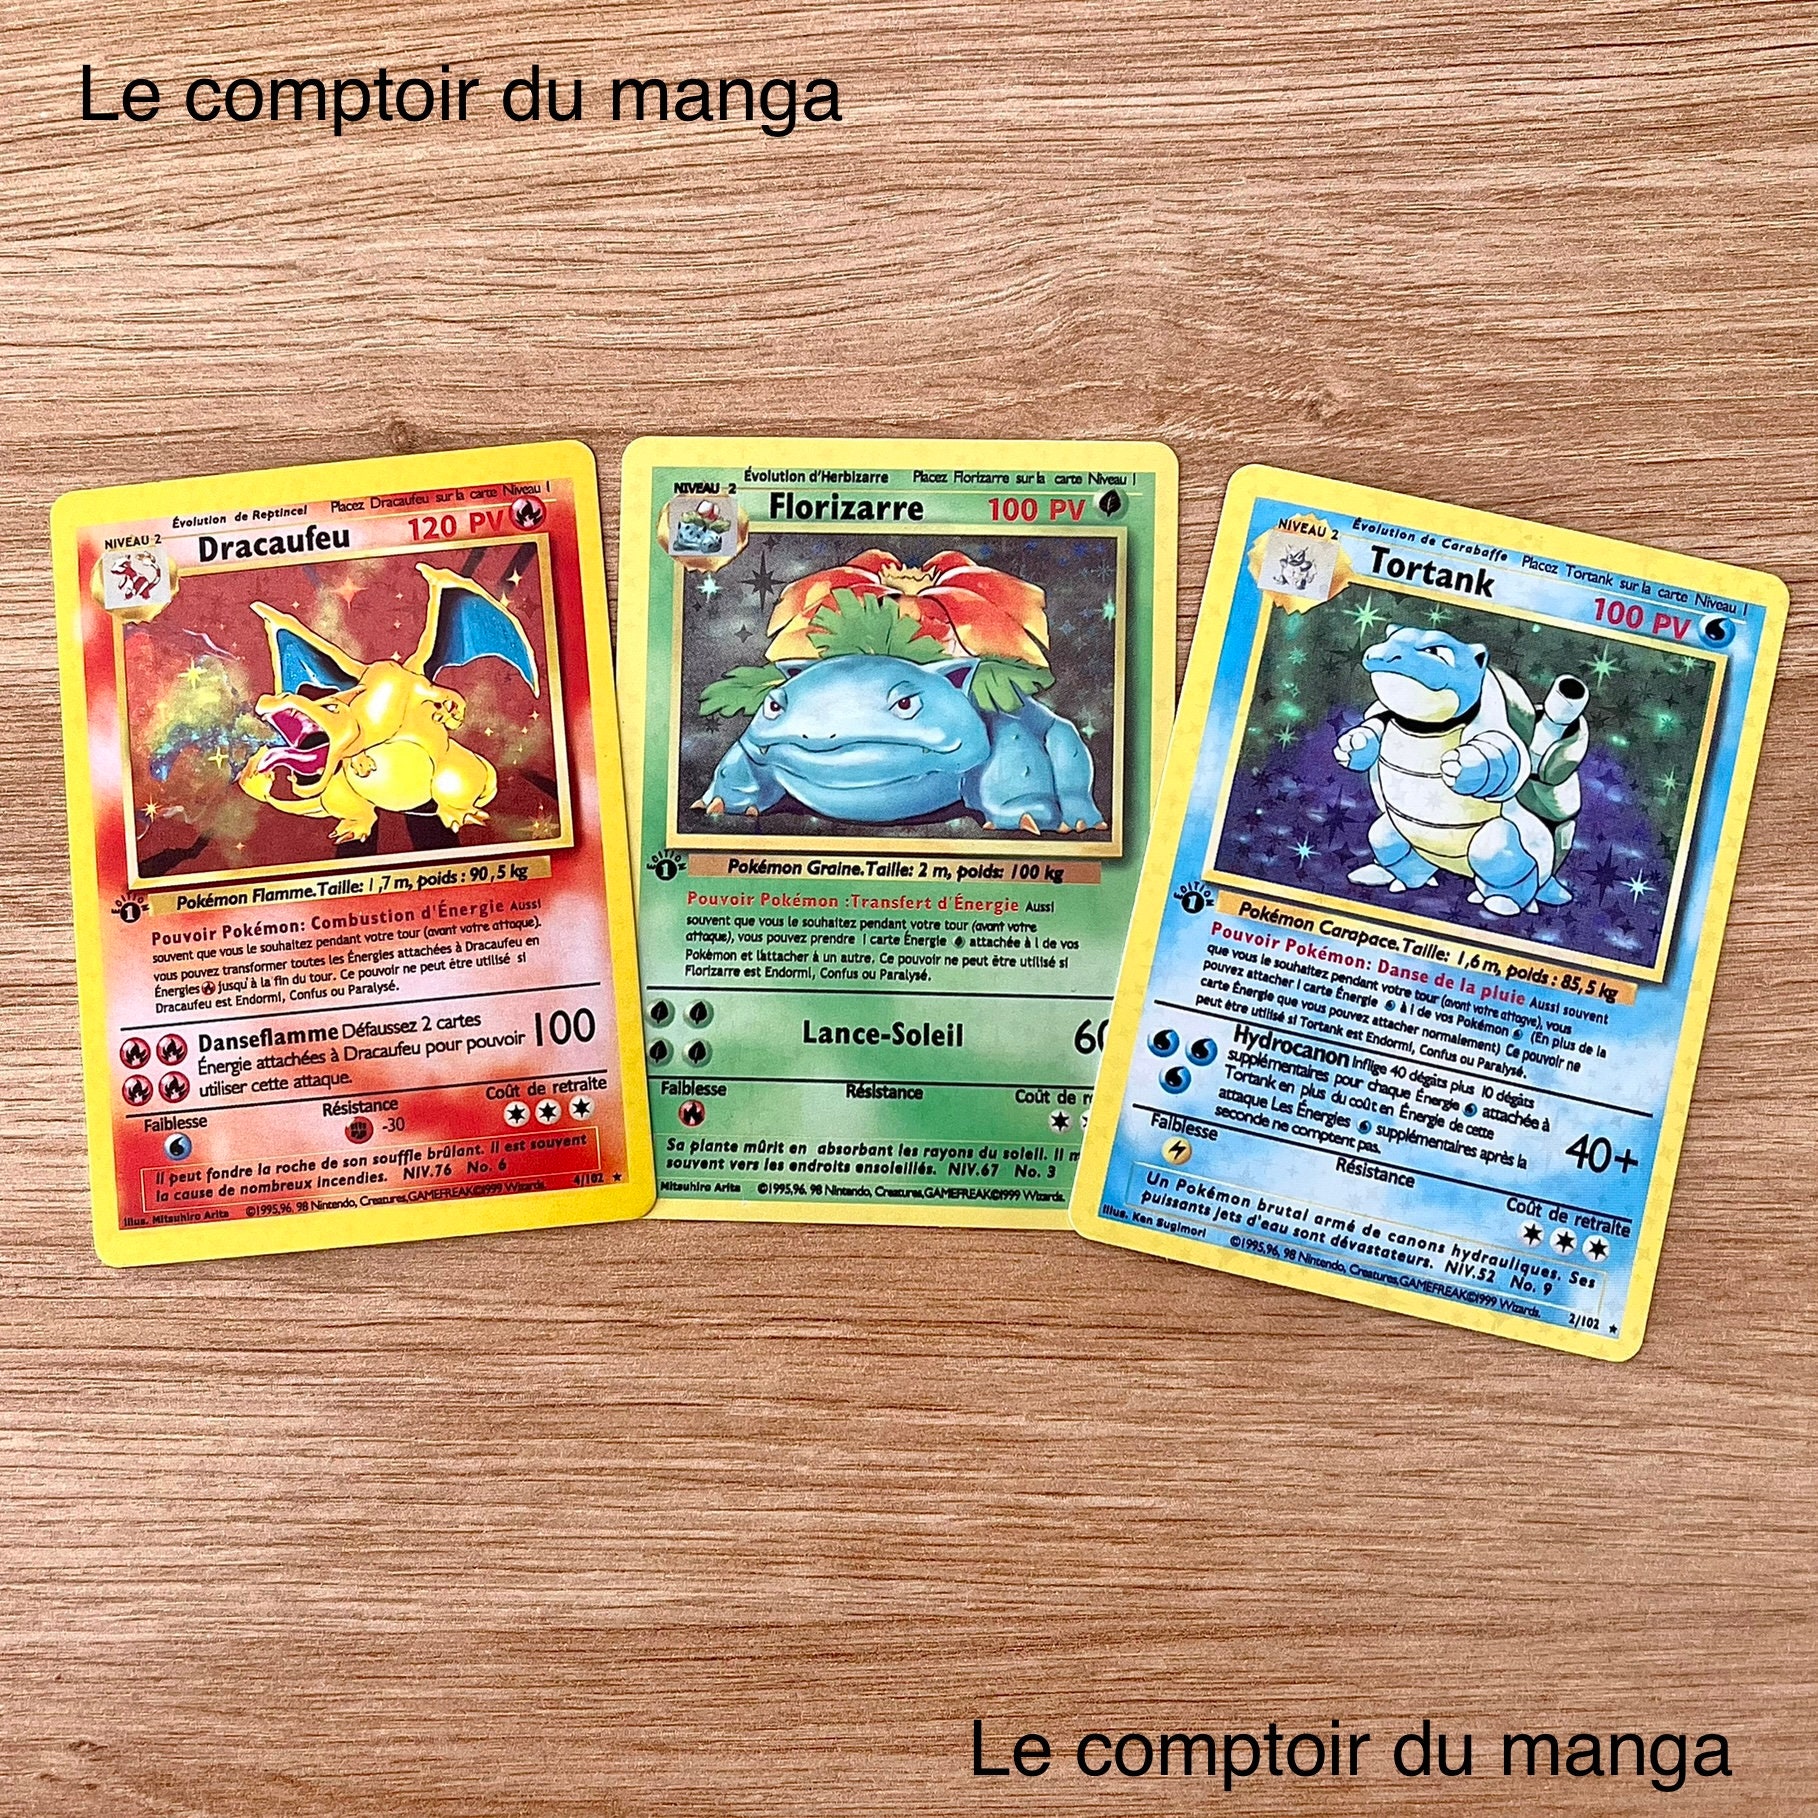 Pokémon-France on X: Florizarre, Dracaufeu et Tortank, des